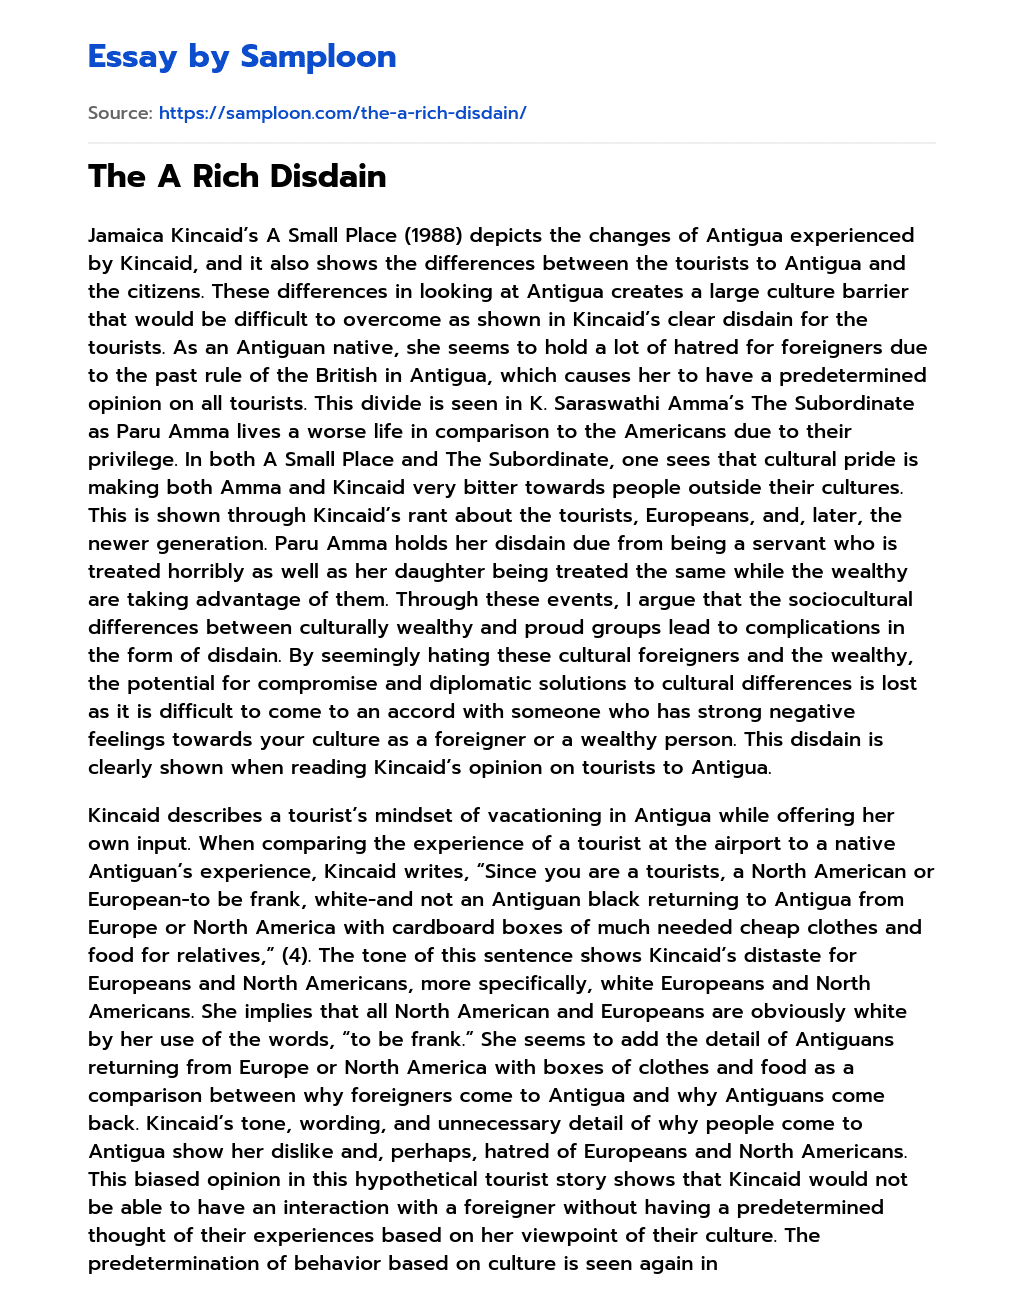 The A Rich Disdain essay